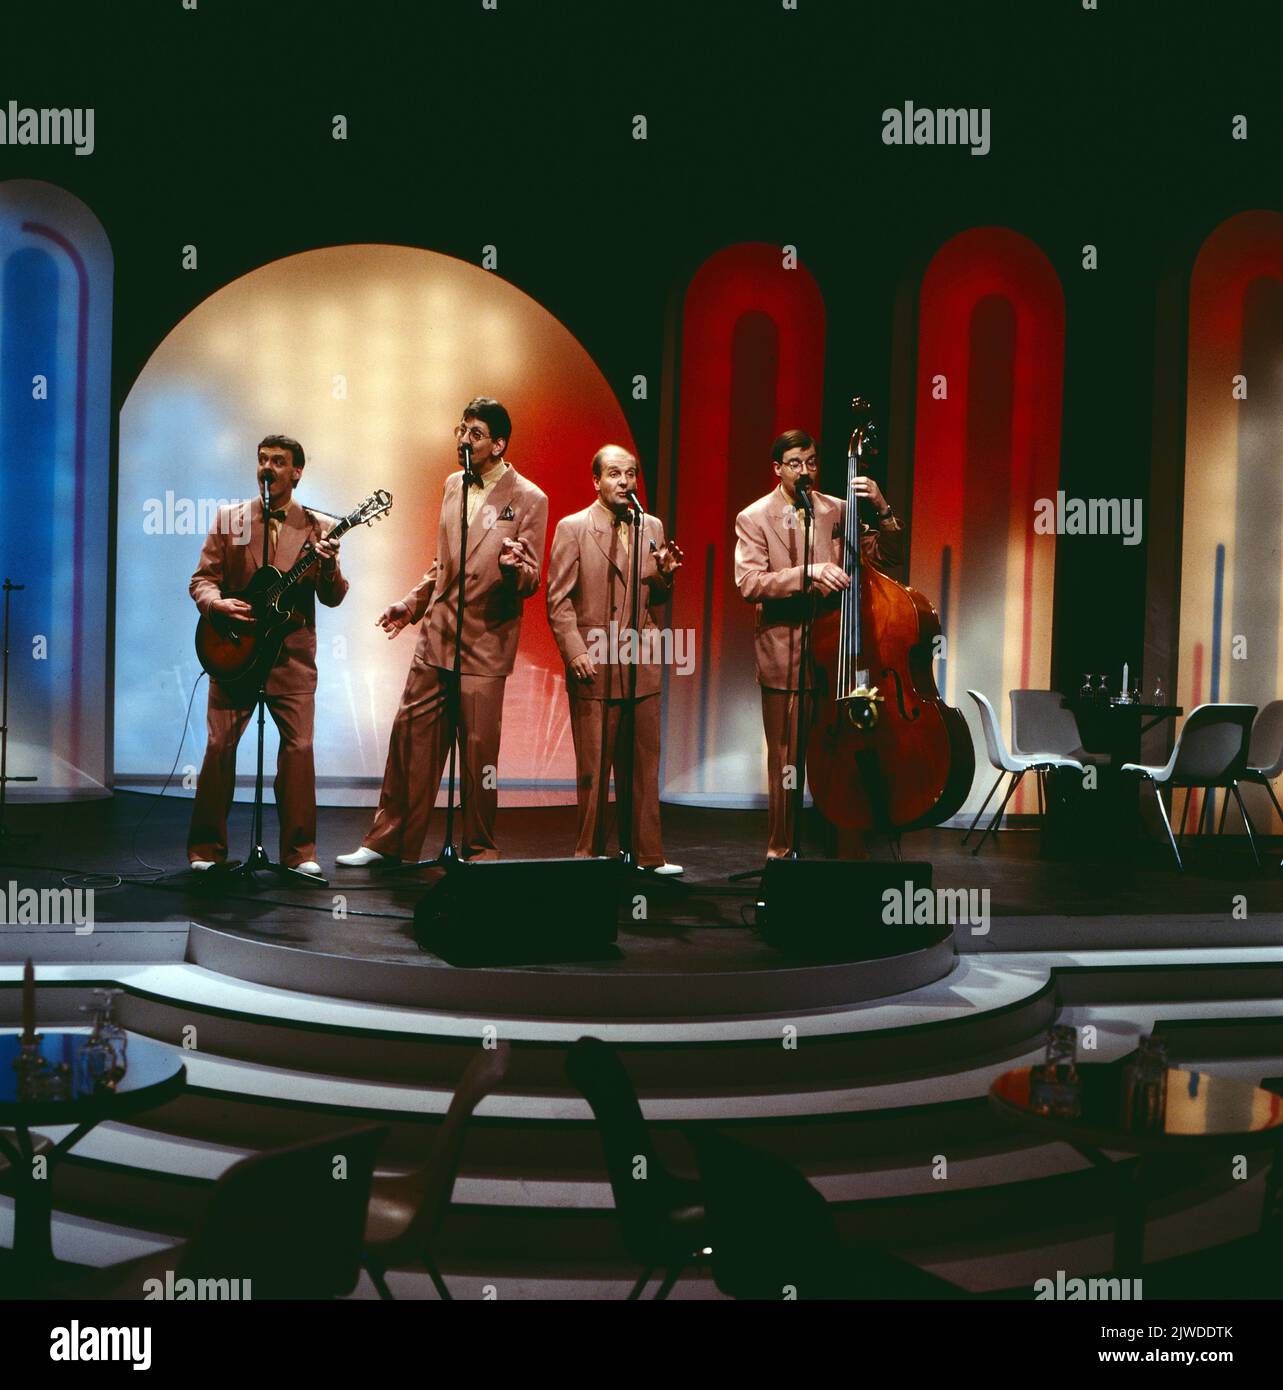 Swing jazz immagini e fotografie stock ad alta risoluzione - Alamy